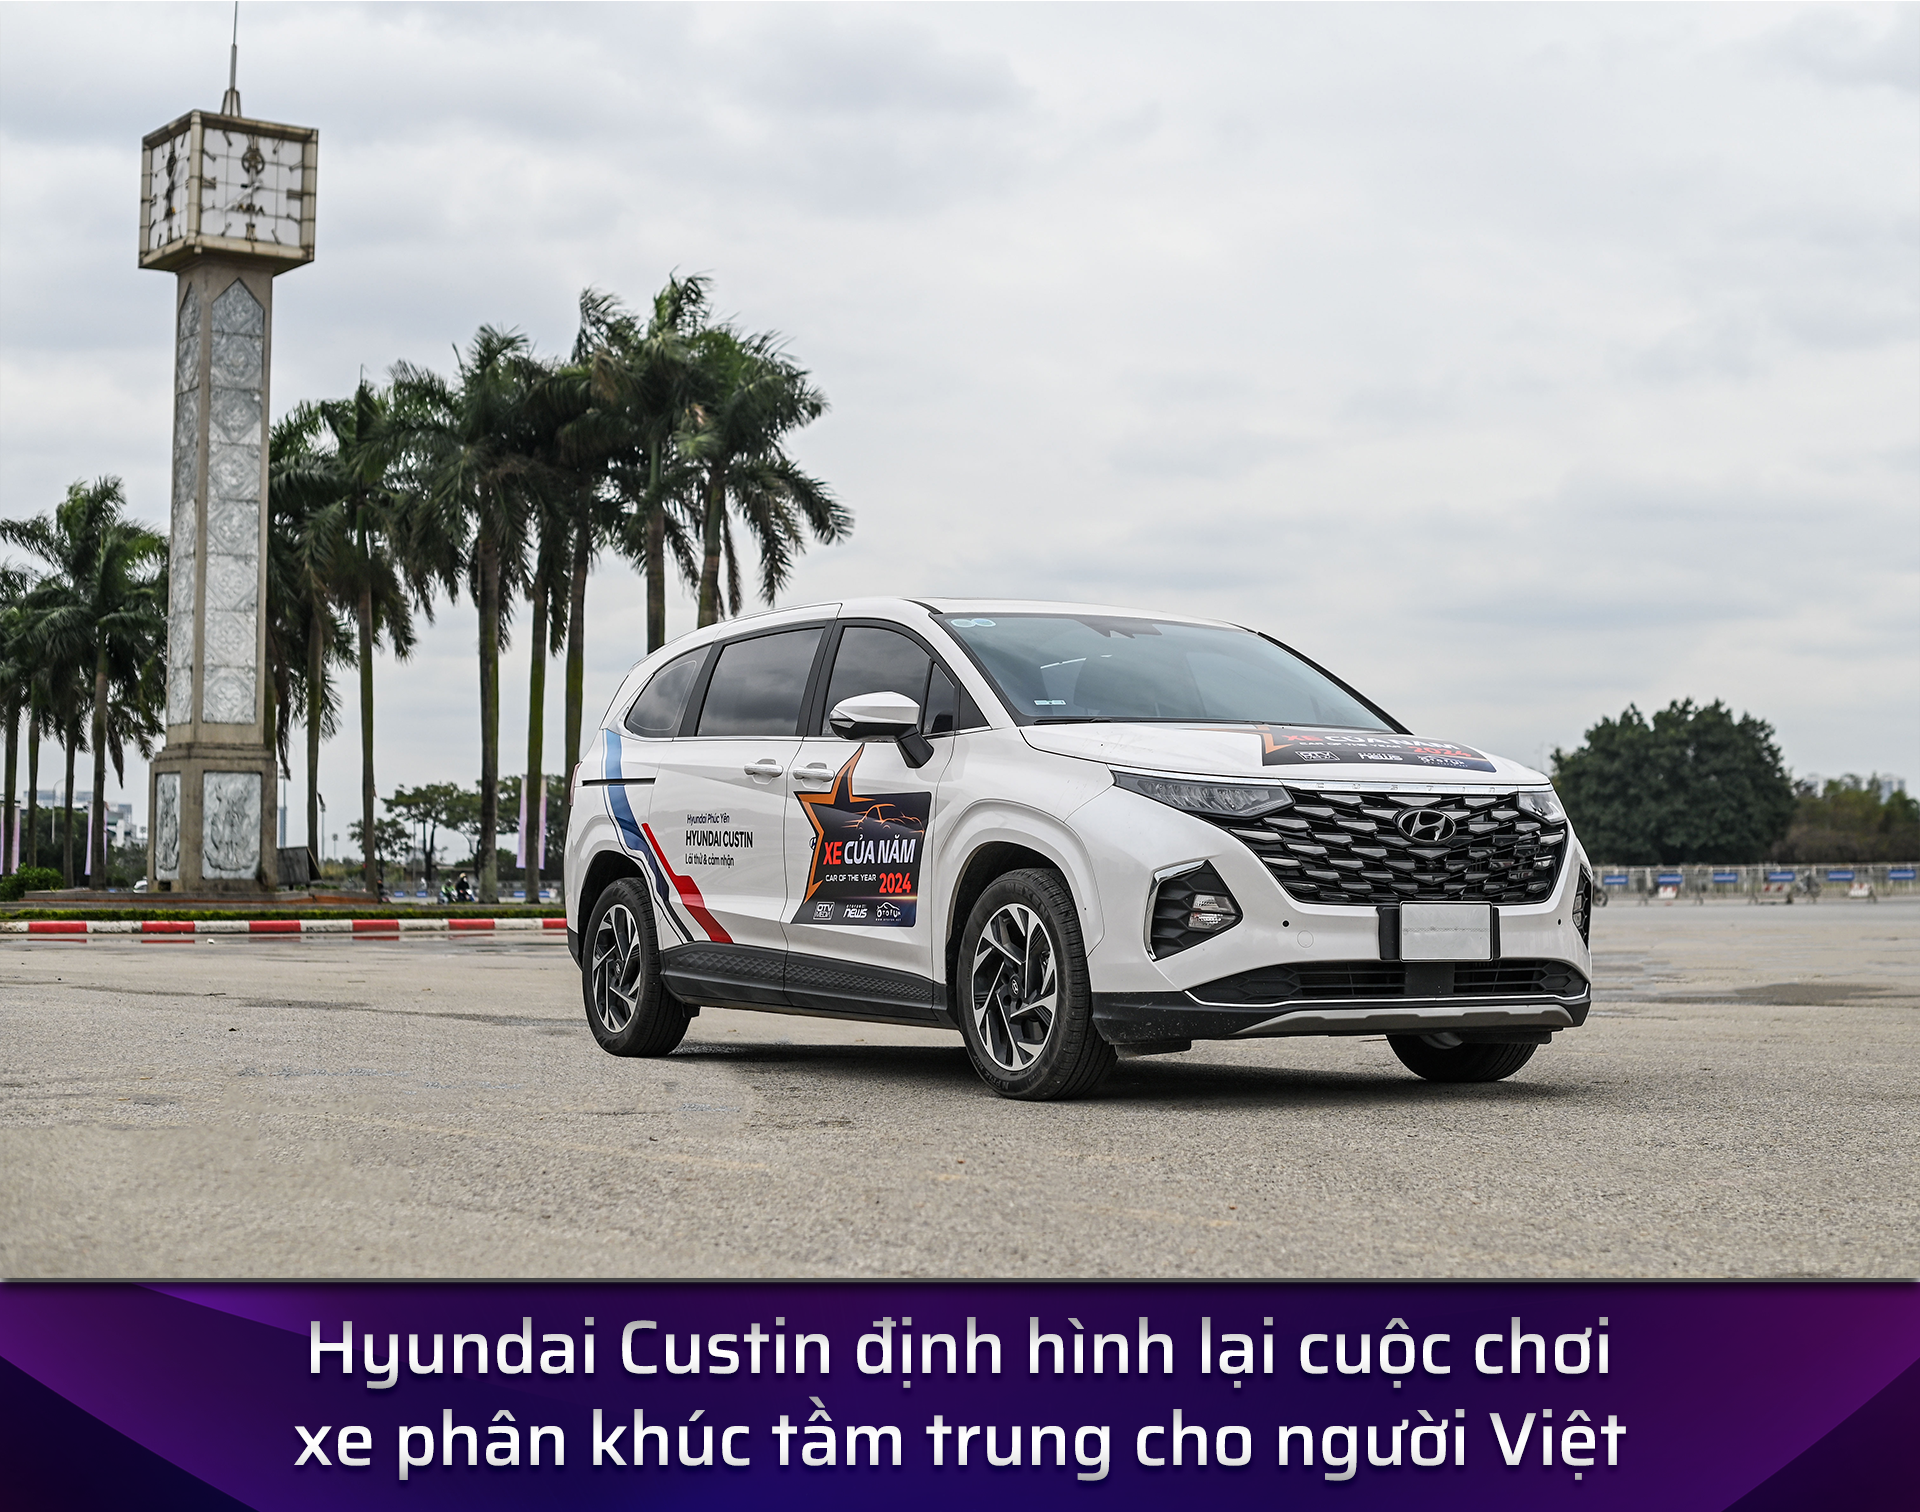 Hội đồng Giám khảo XE CỦA NĂM 2024 tiết lộ lý do chọn Hyundai Custin là Xe Thoải mái Tiện ích nhất 2024